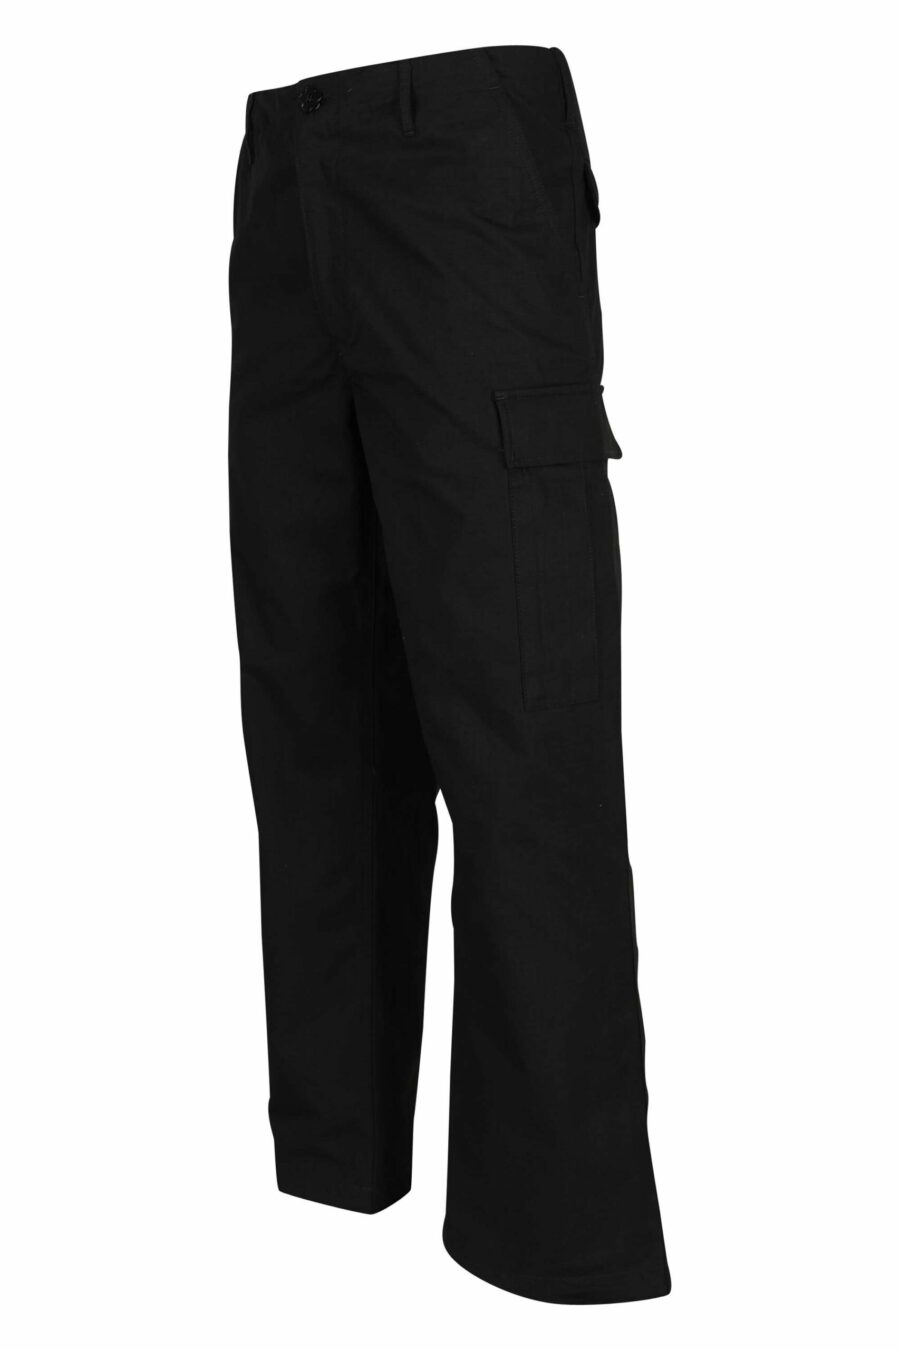 Pantalón negro estilo cargo con logo "boke flower" - 3612230618855 1 scaled